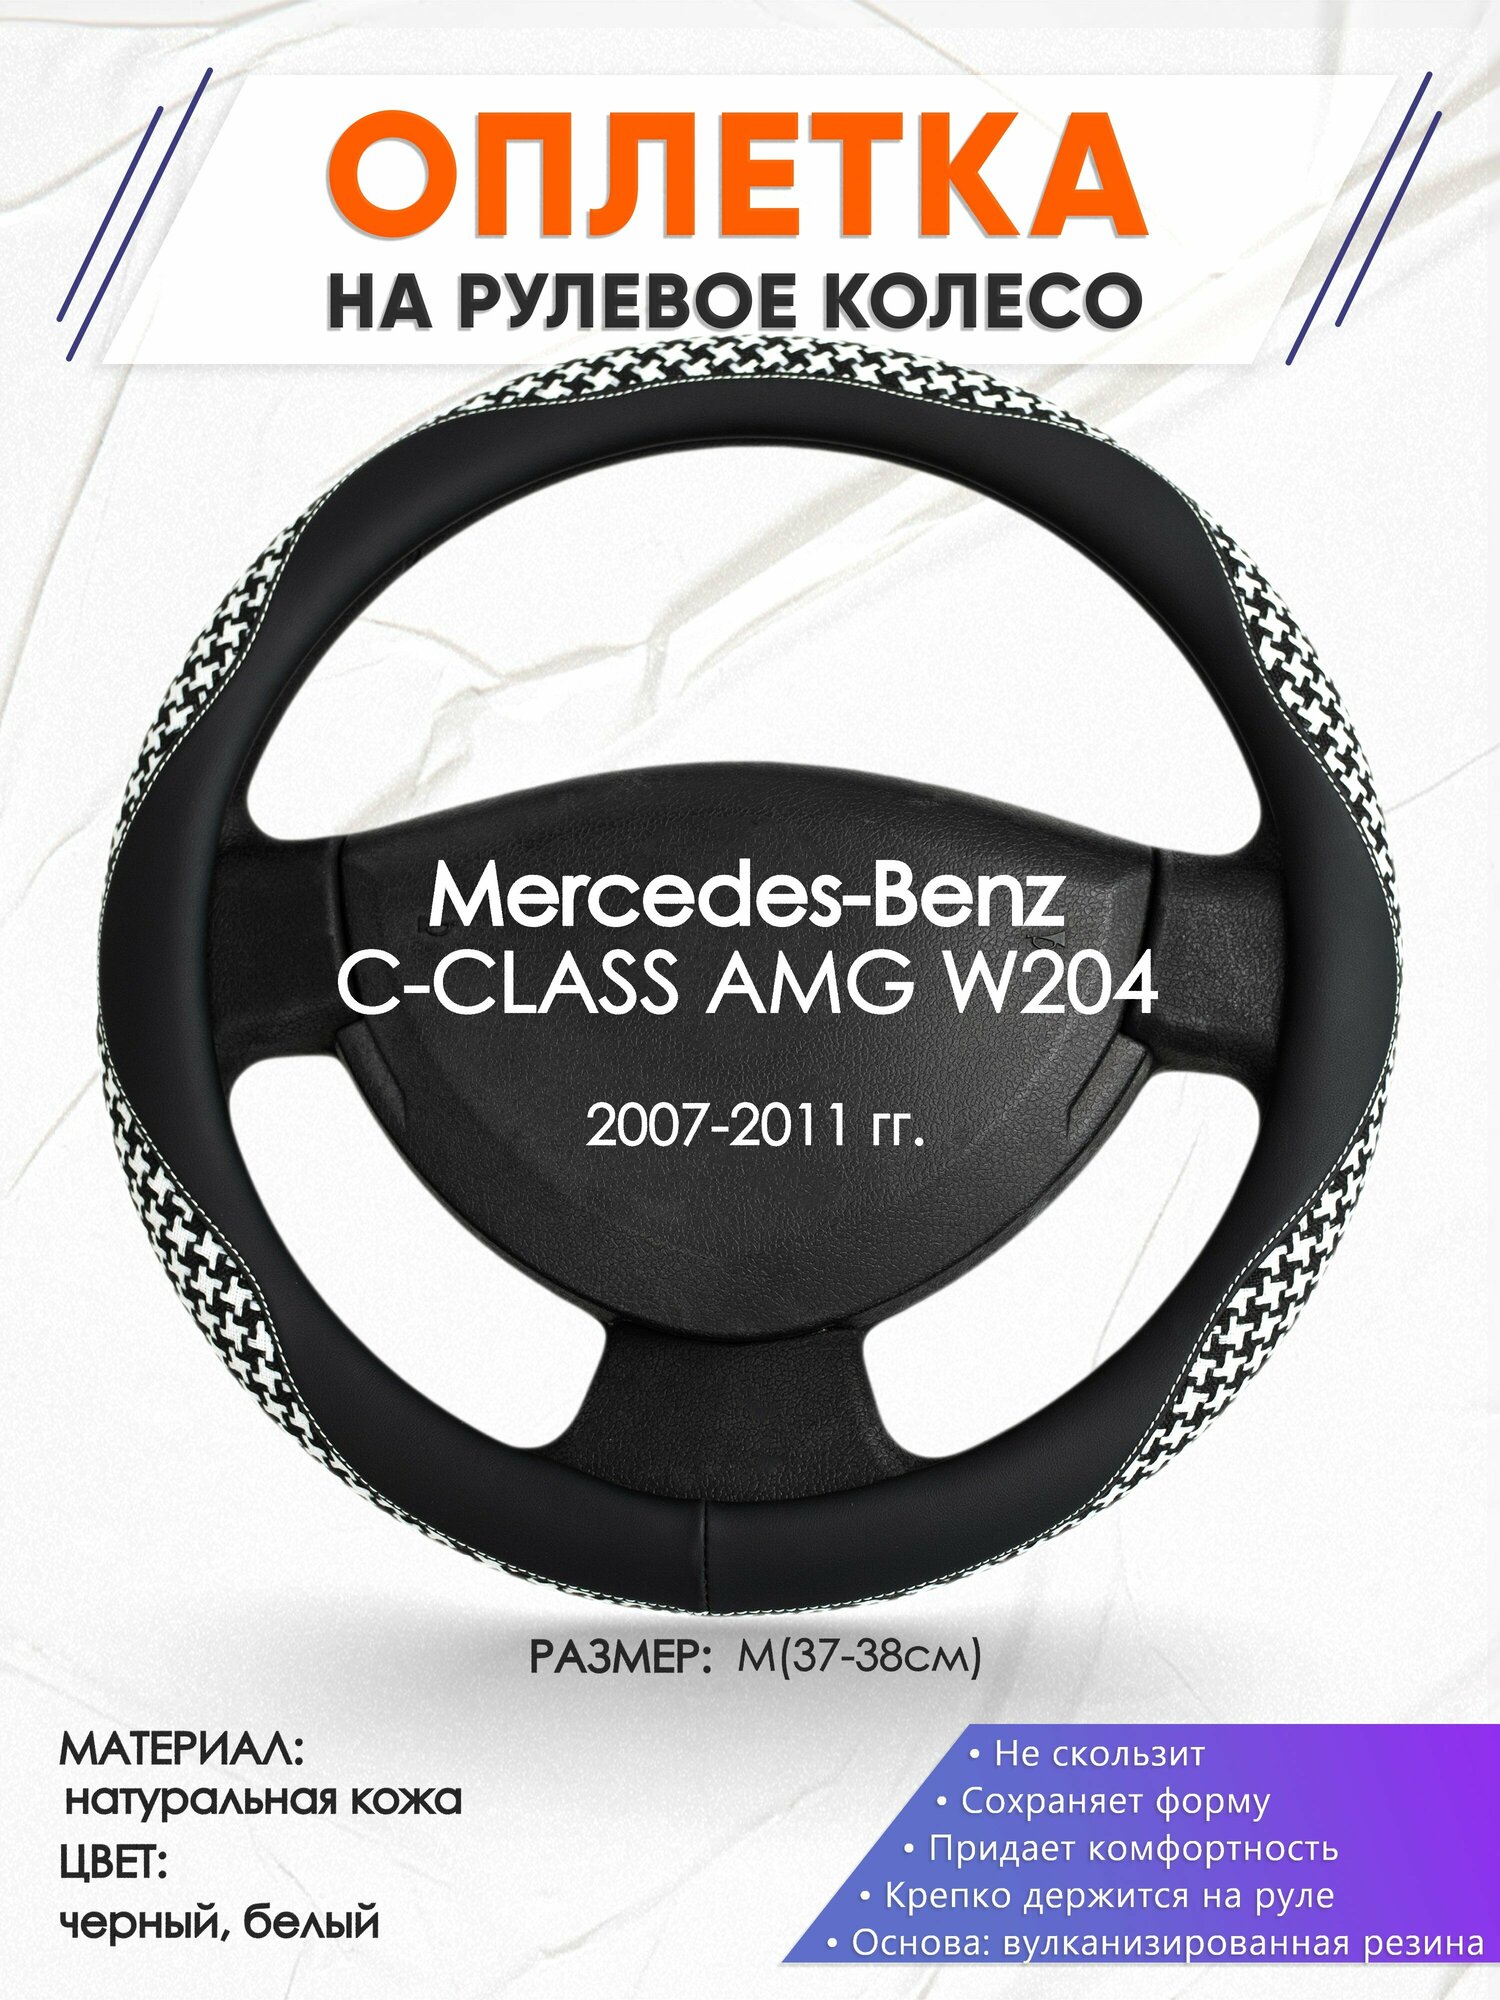 Оплетка наруль для Mercedes-Benz C-CLASS AMG W204(Мерседес Бенц Ц Класс) 2007-2011 годов выпуска, размер M(37-38см), Натуральная кожа 21